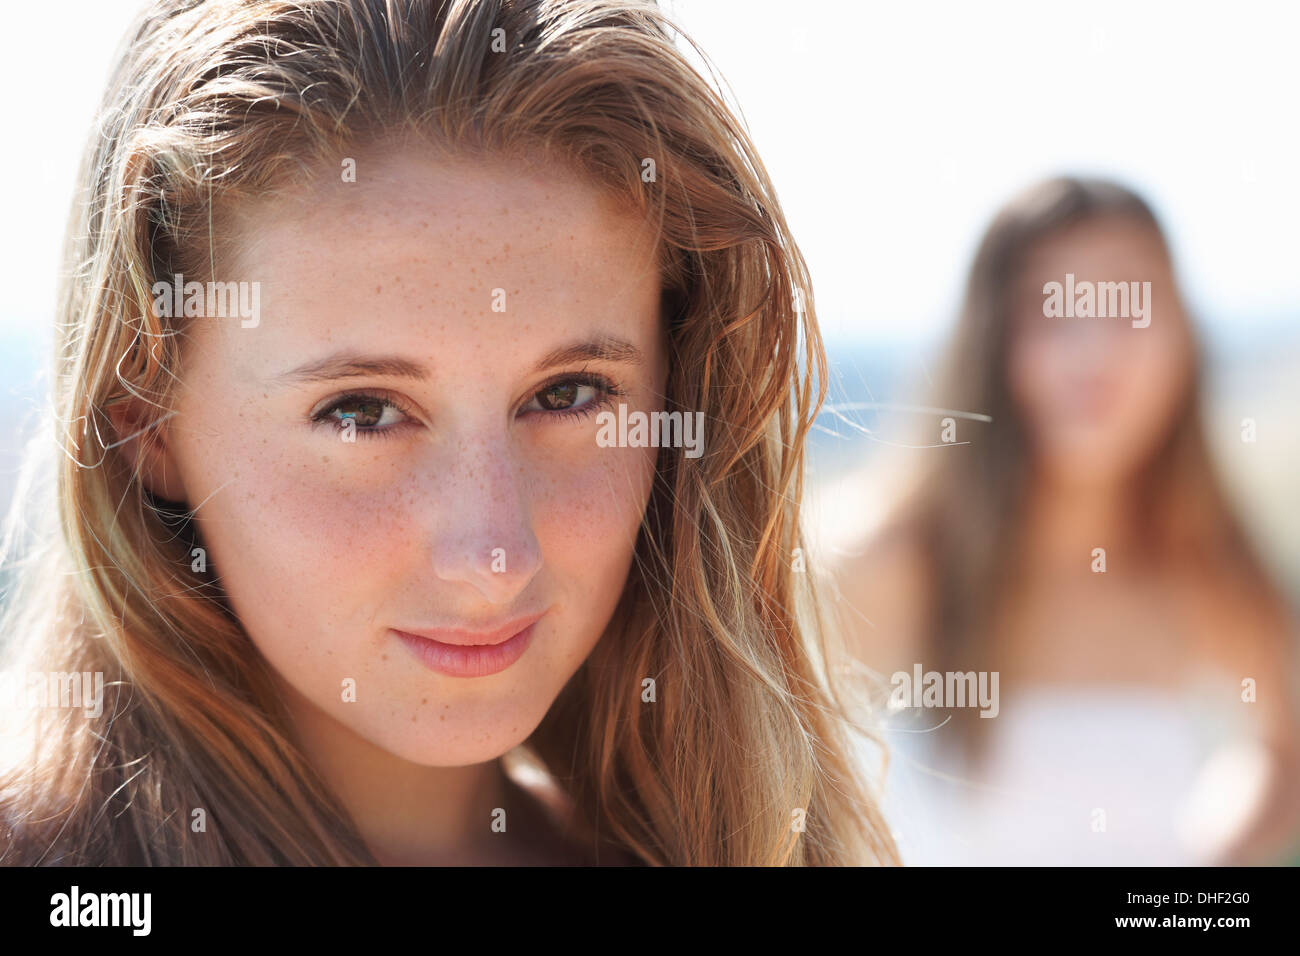 Retrato de adolescente, centrarse en primer plano Foto de stock